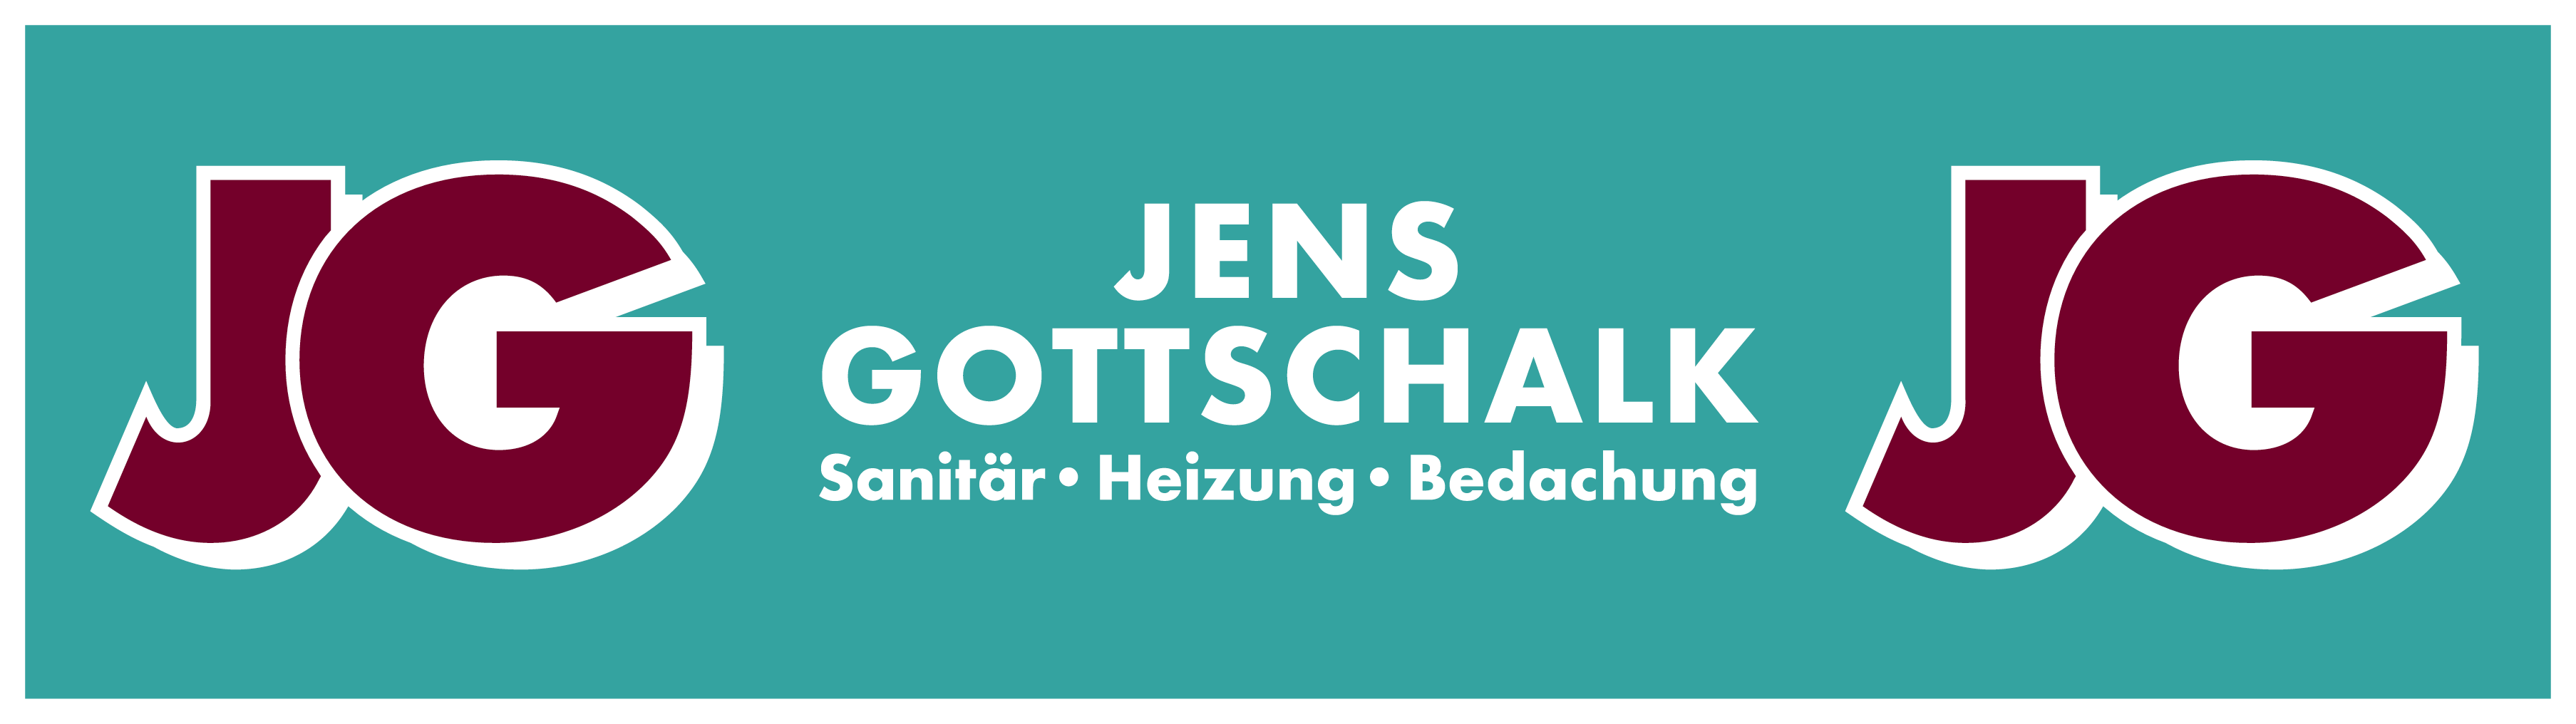 Trikotwerbung Gottschalk_Logo